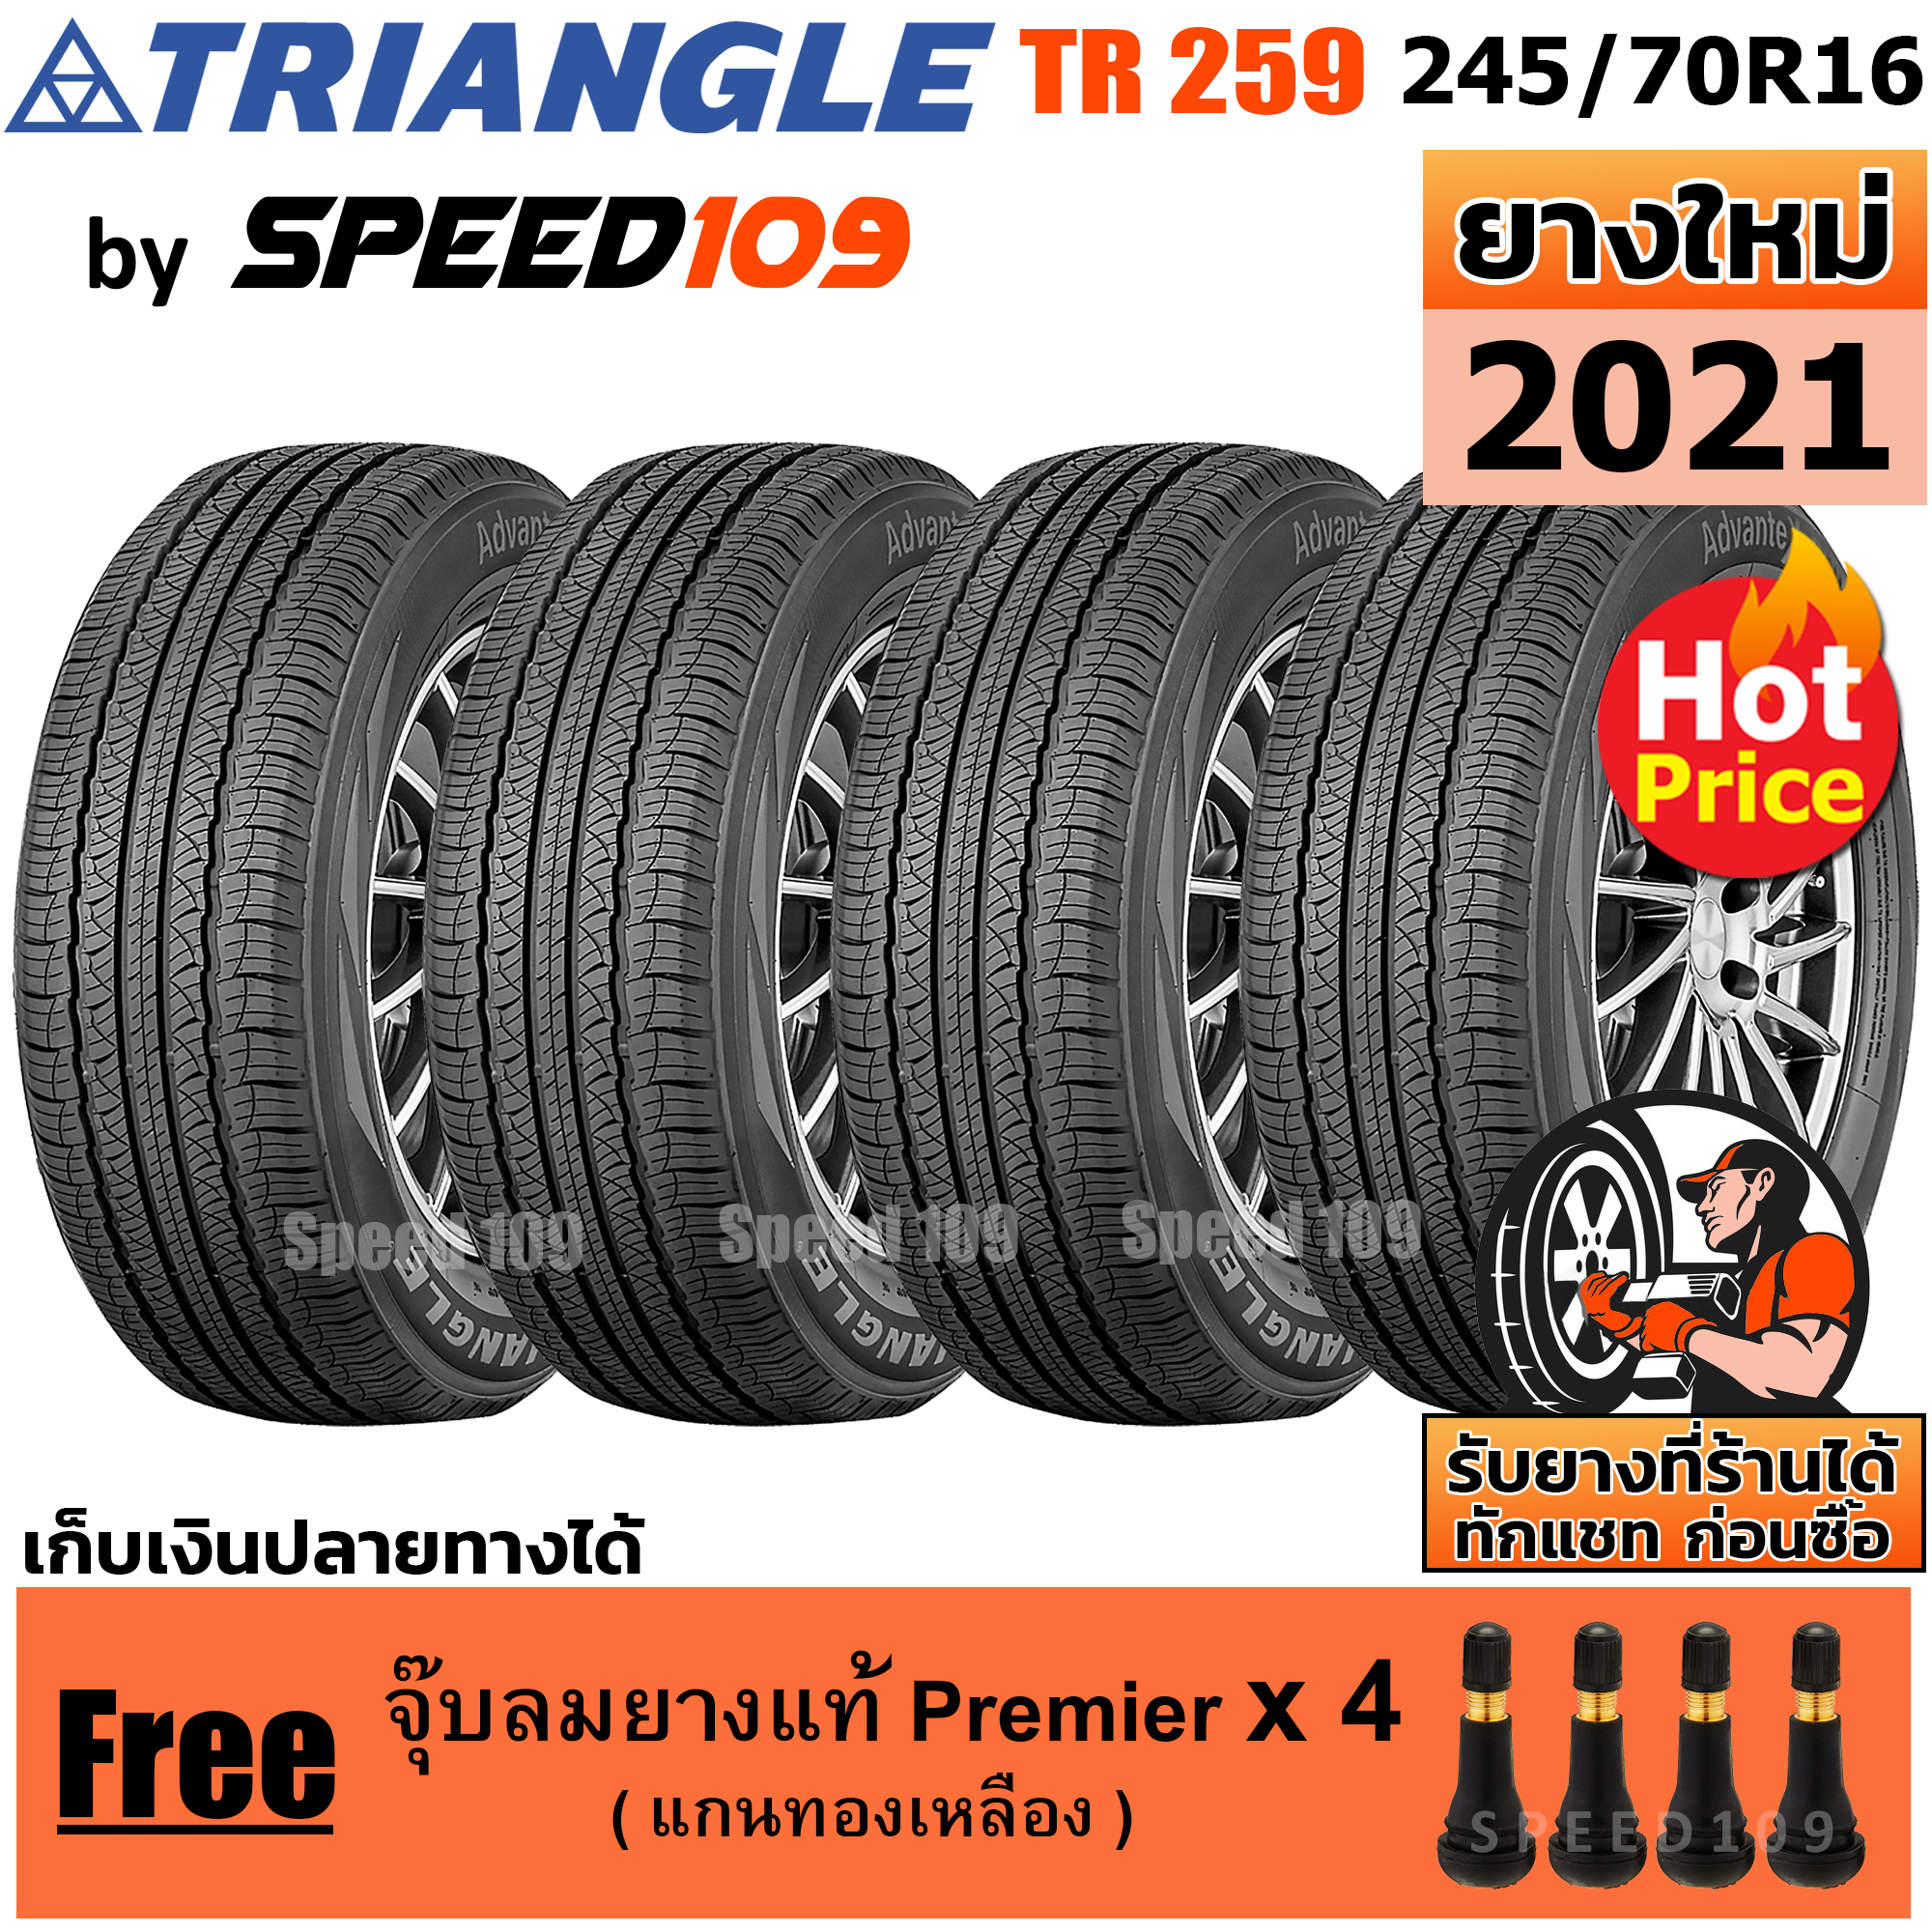 TRIANGLE ยางรถยนต์ ขอบ 16 ขนาด 245/70R16 รุ่น TR259 - 4 เส้น (ปี 2021)